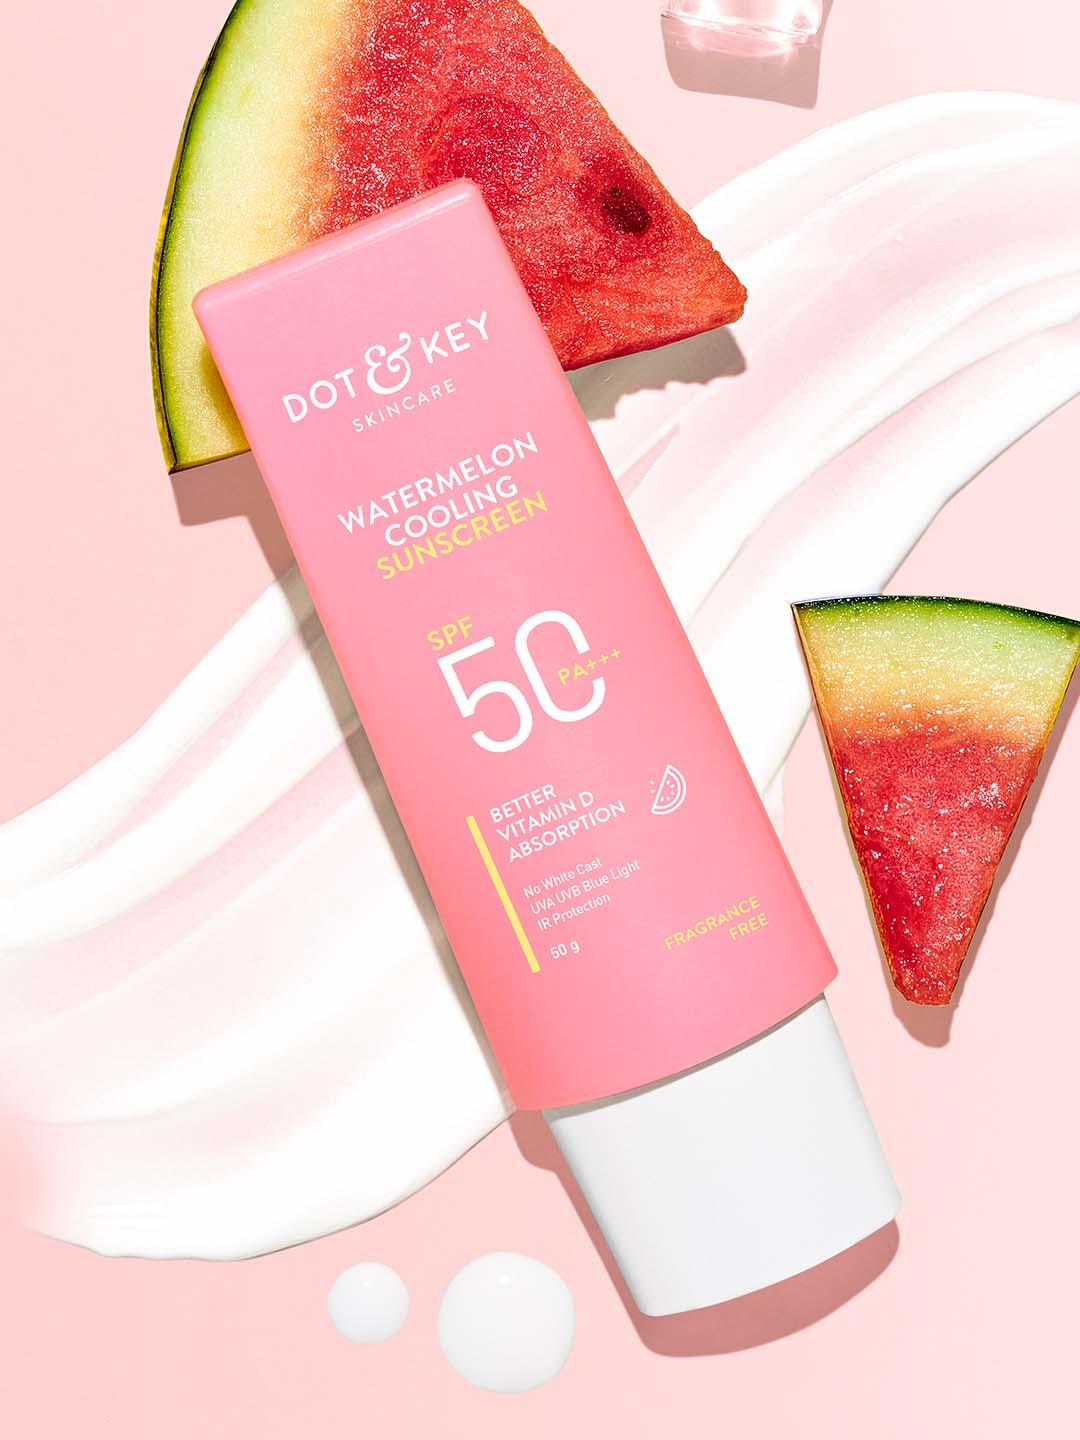 DOT & KEY Watermelon Hyaluronic SPF 50 PA+++ Dewy & 100% No White Cast Sunscreen - 50g